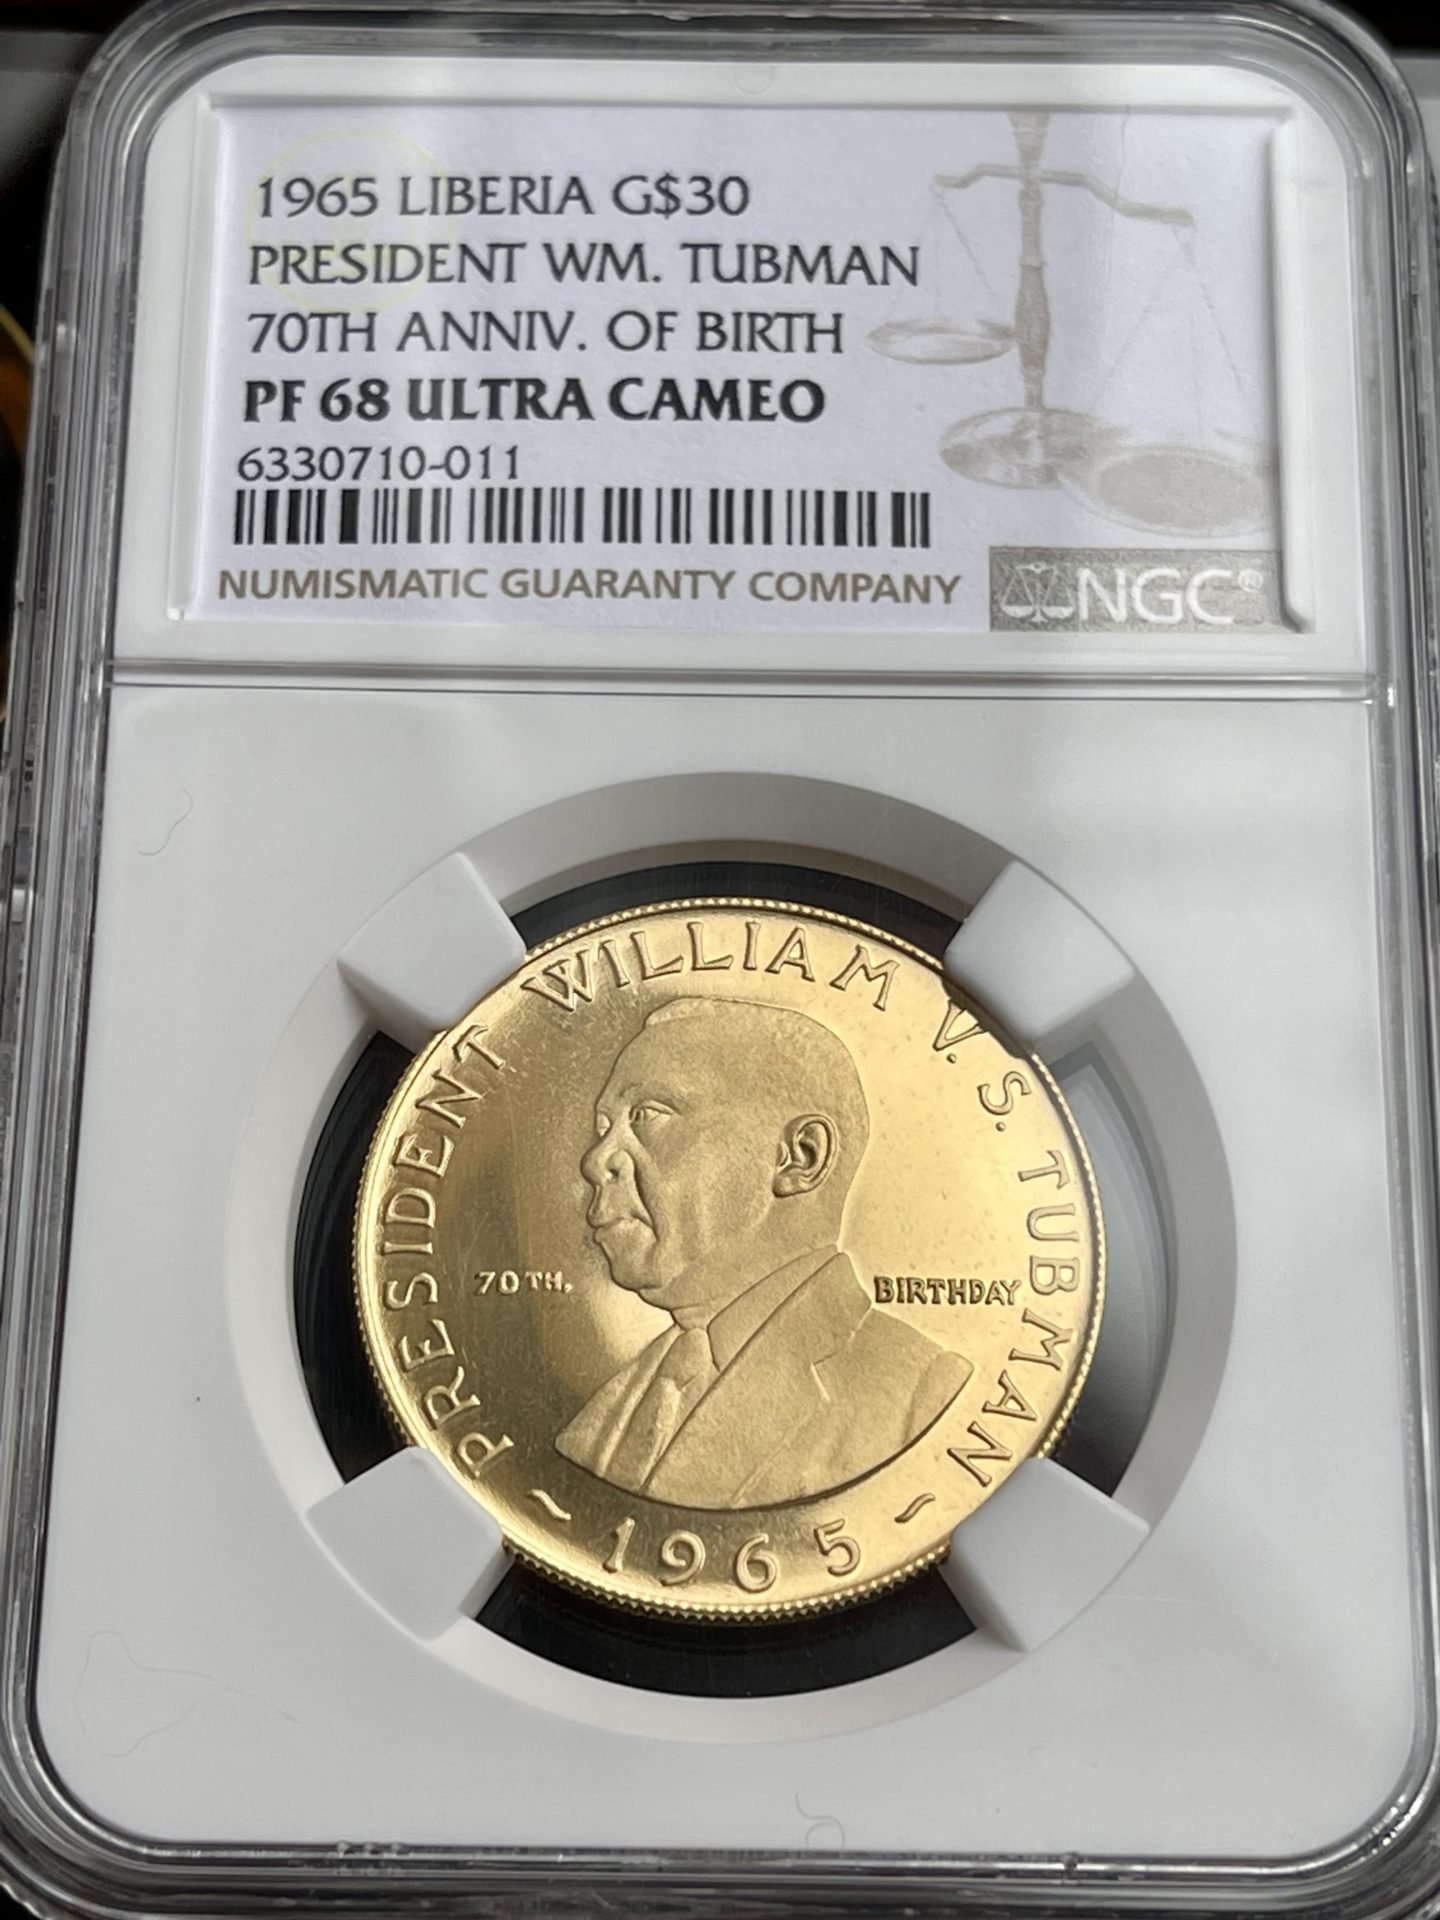 Liberia - $30 oro - 1965 - Tubman - 70 cumpleaños - MGC PF68 Ultra Cameo